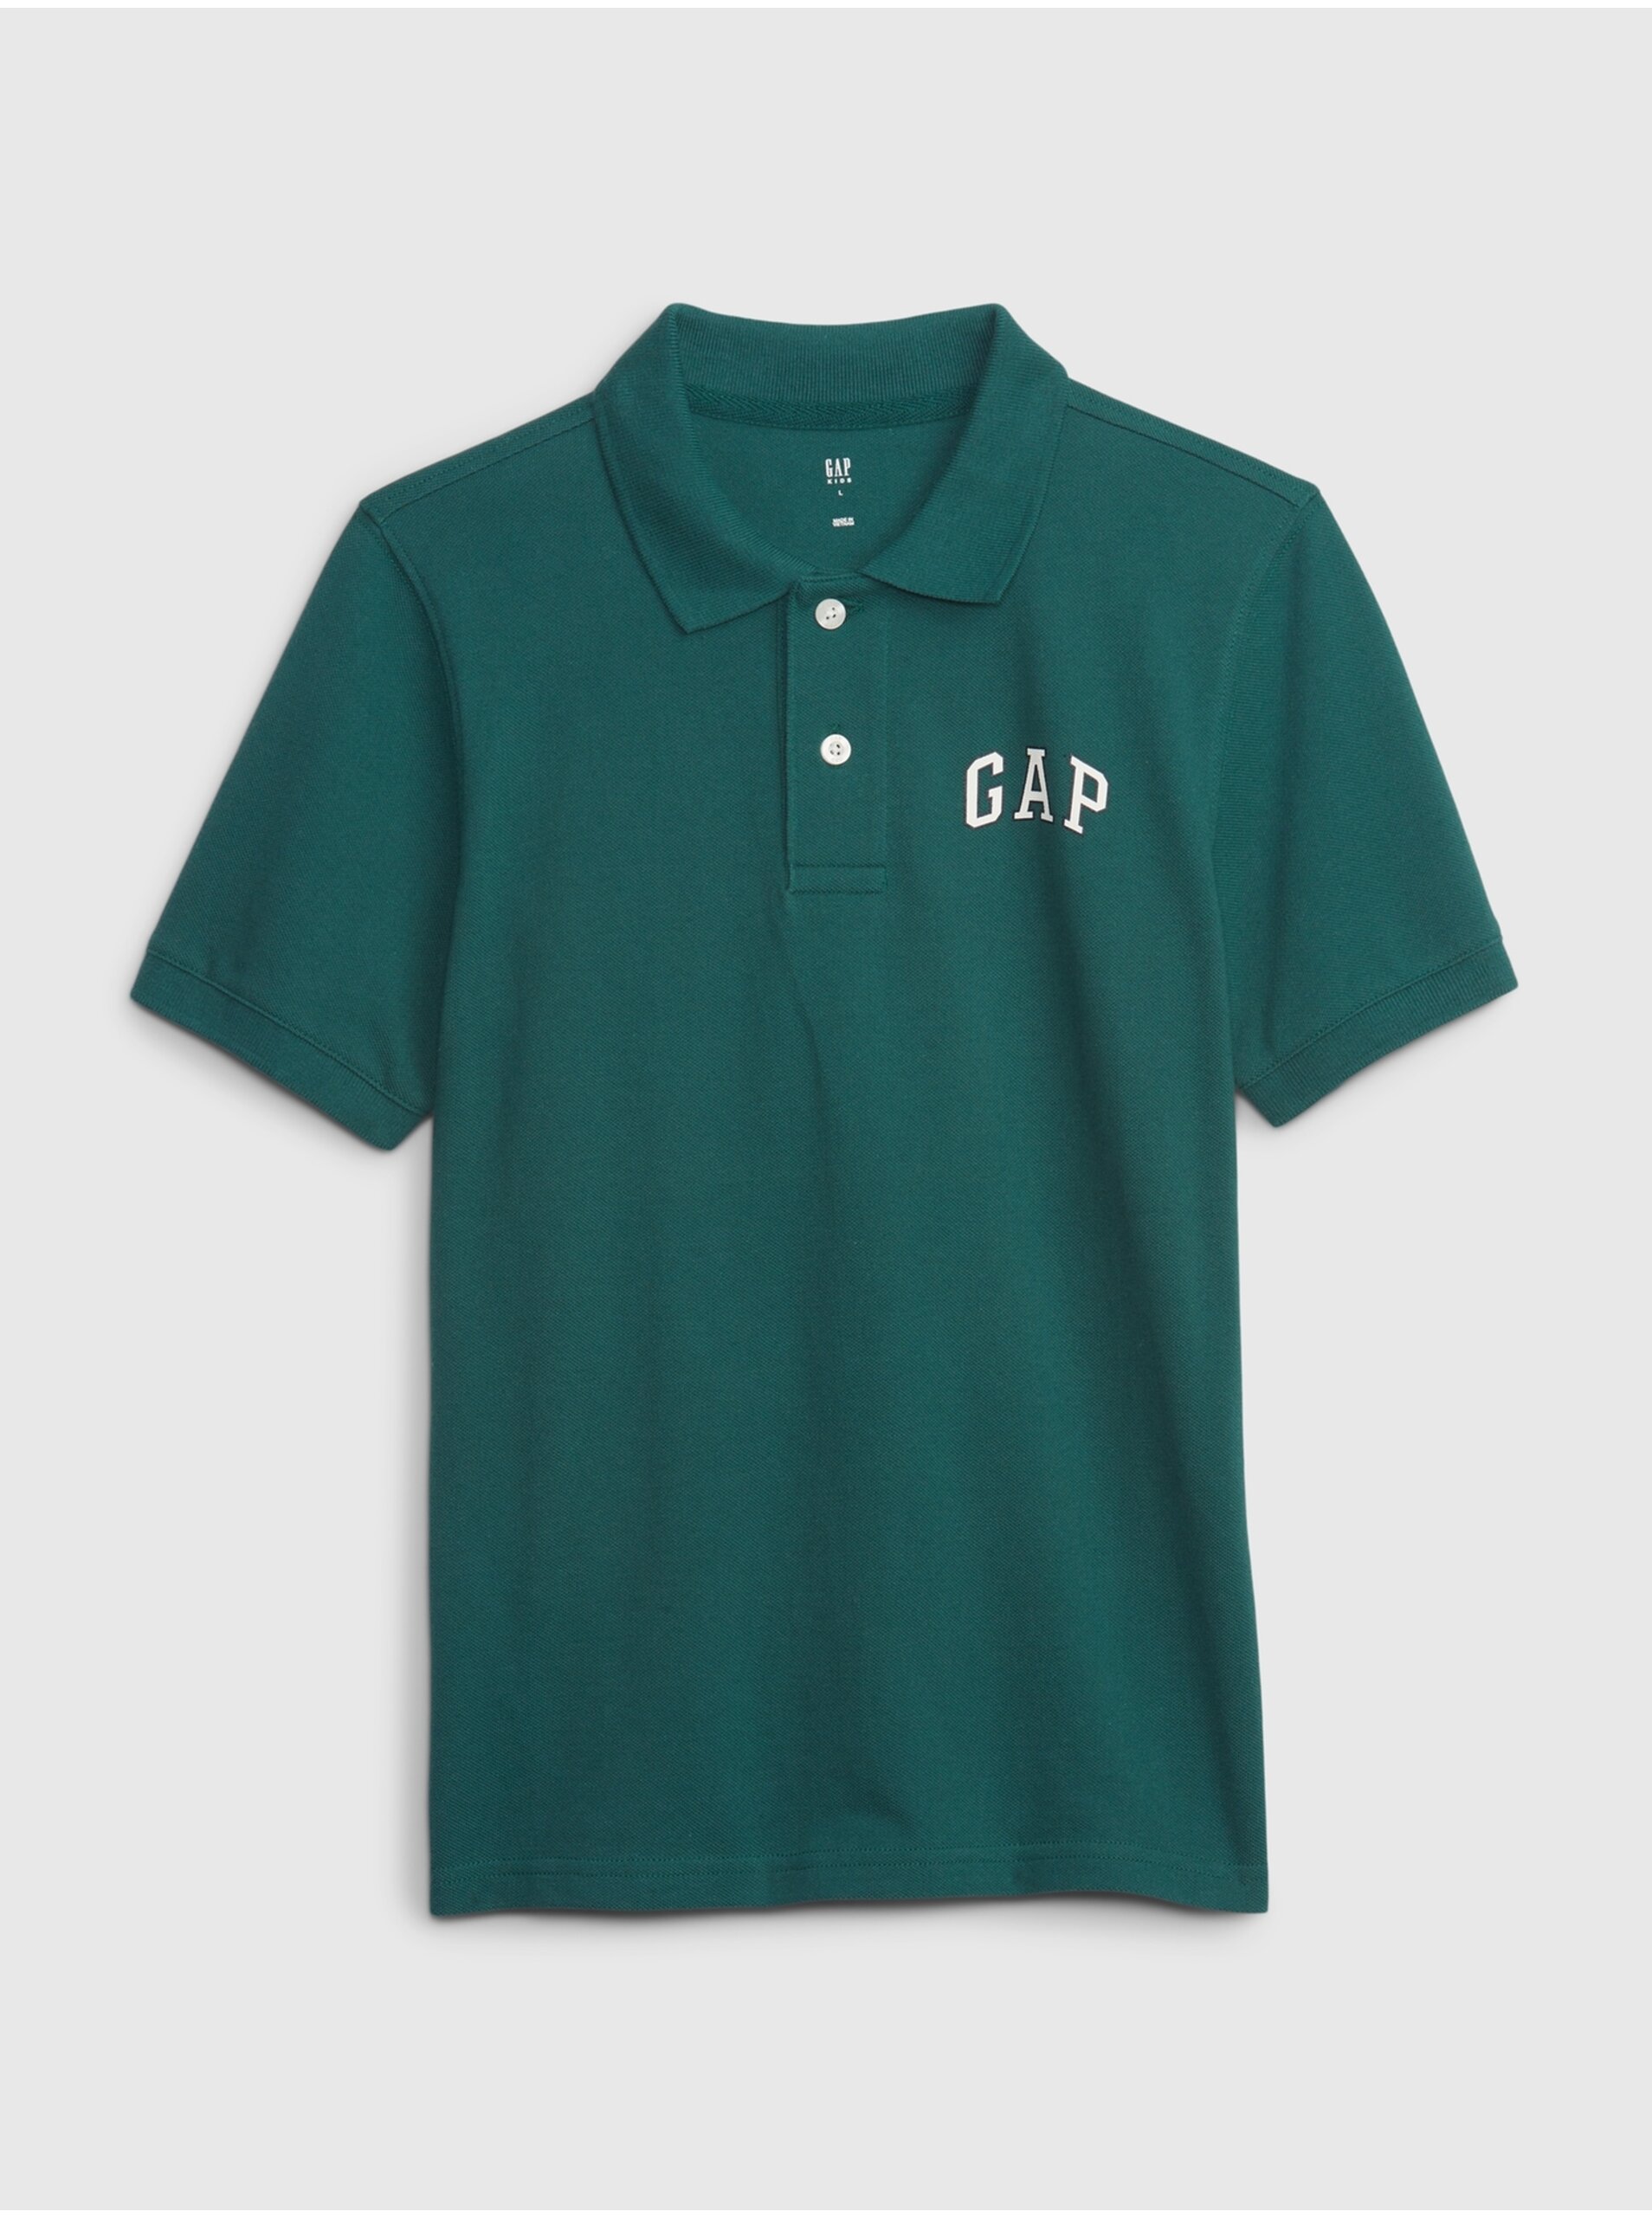 E-shop Petrolejové klučičí polo tričko s logem GAP